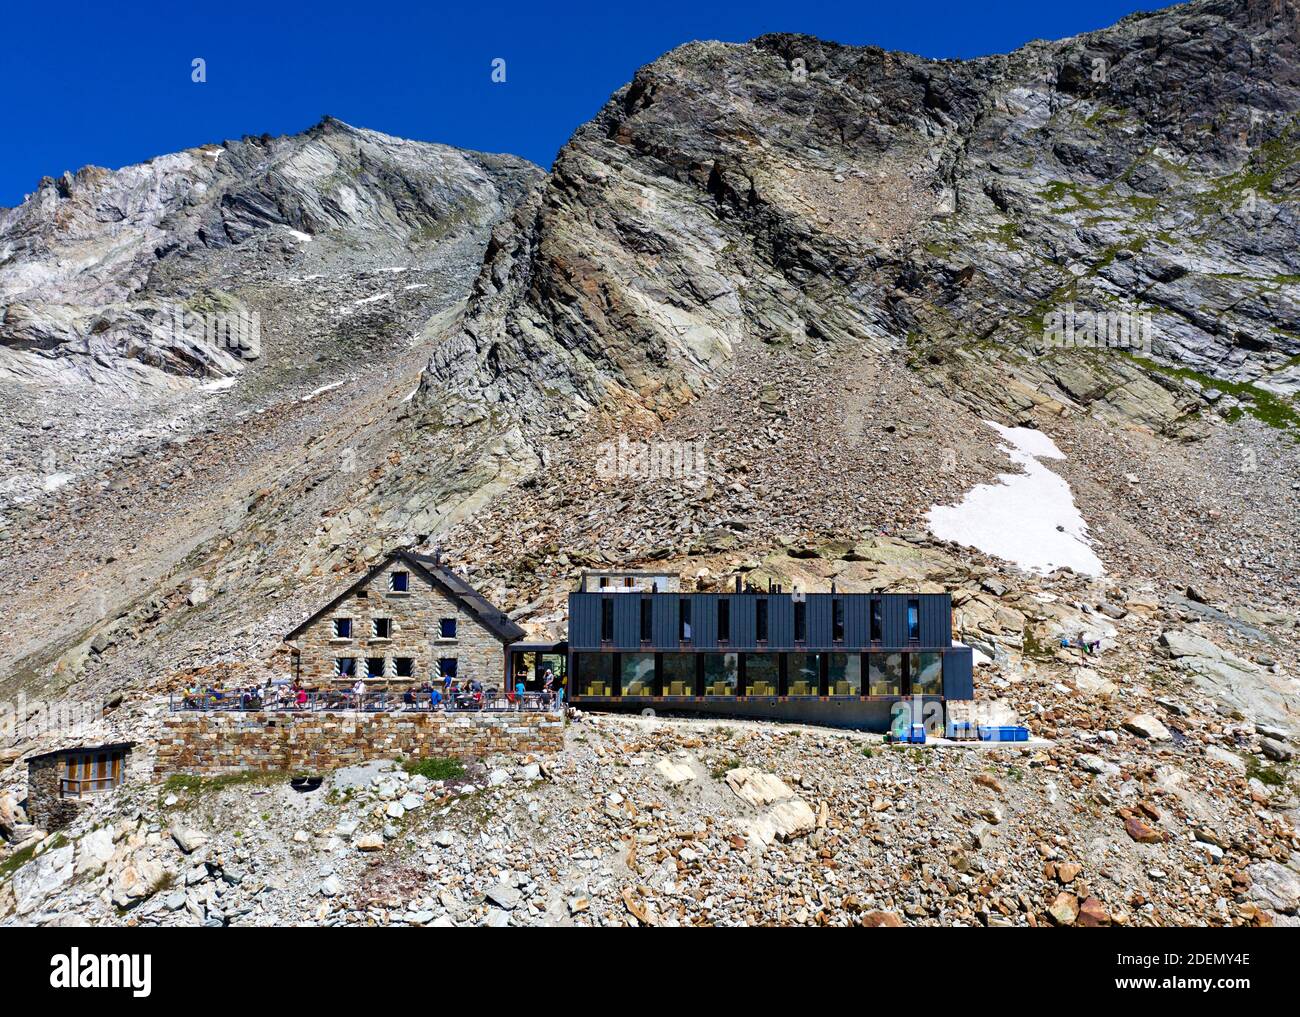 Berghütte Cabane de Moiry, Grimentz, Wallis, Schweiz / Rifugio Cabane de Moiry, Grimentz, Vallese, Svizzera Foto Stock